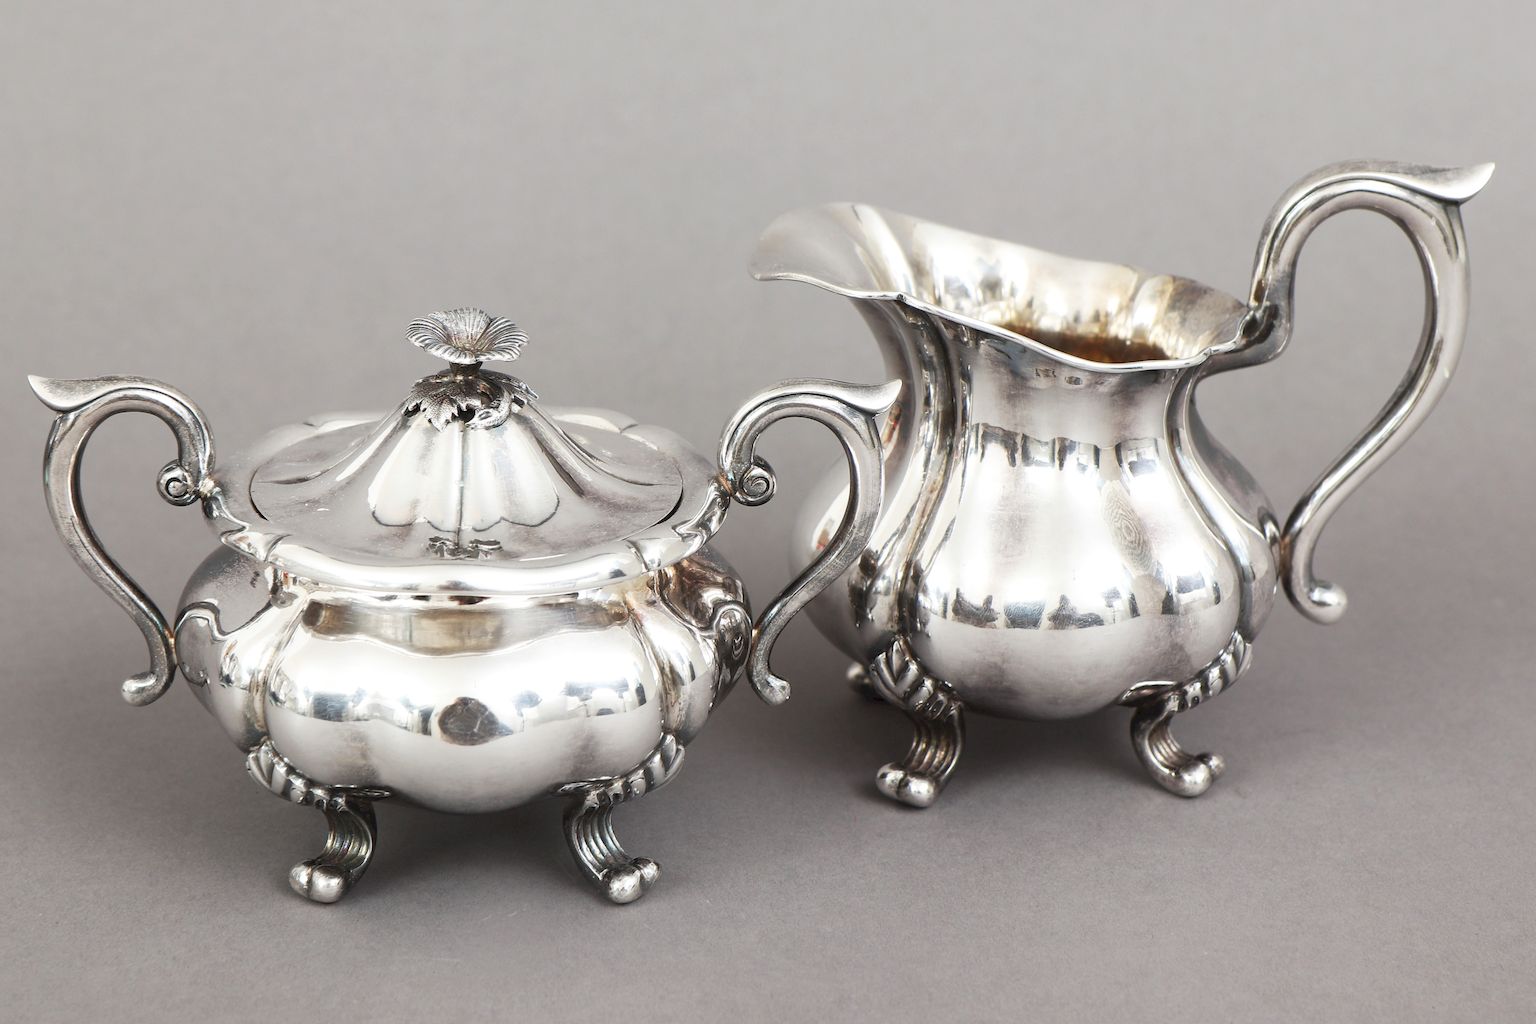 Silber Tee- und Kaffeeservice19. Jahrhundert, 925er Silber, 4-teiliges Set bestehend aus Teekanne, - Image 2 of 5